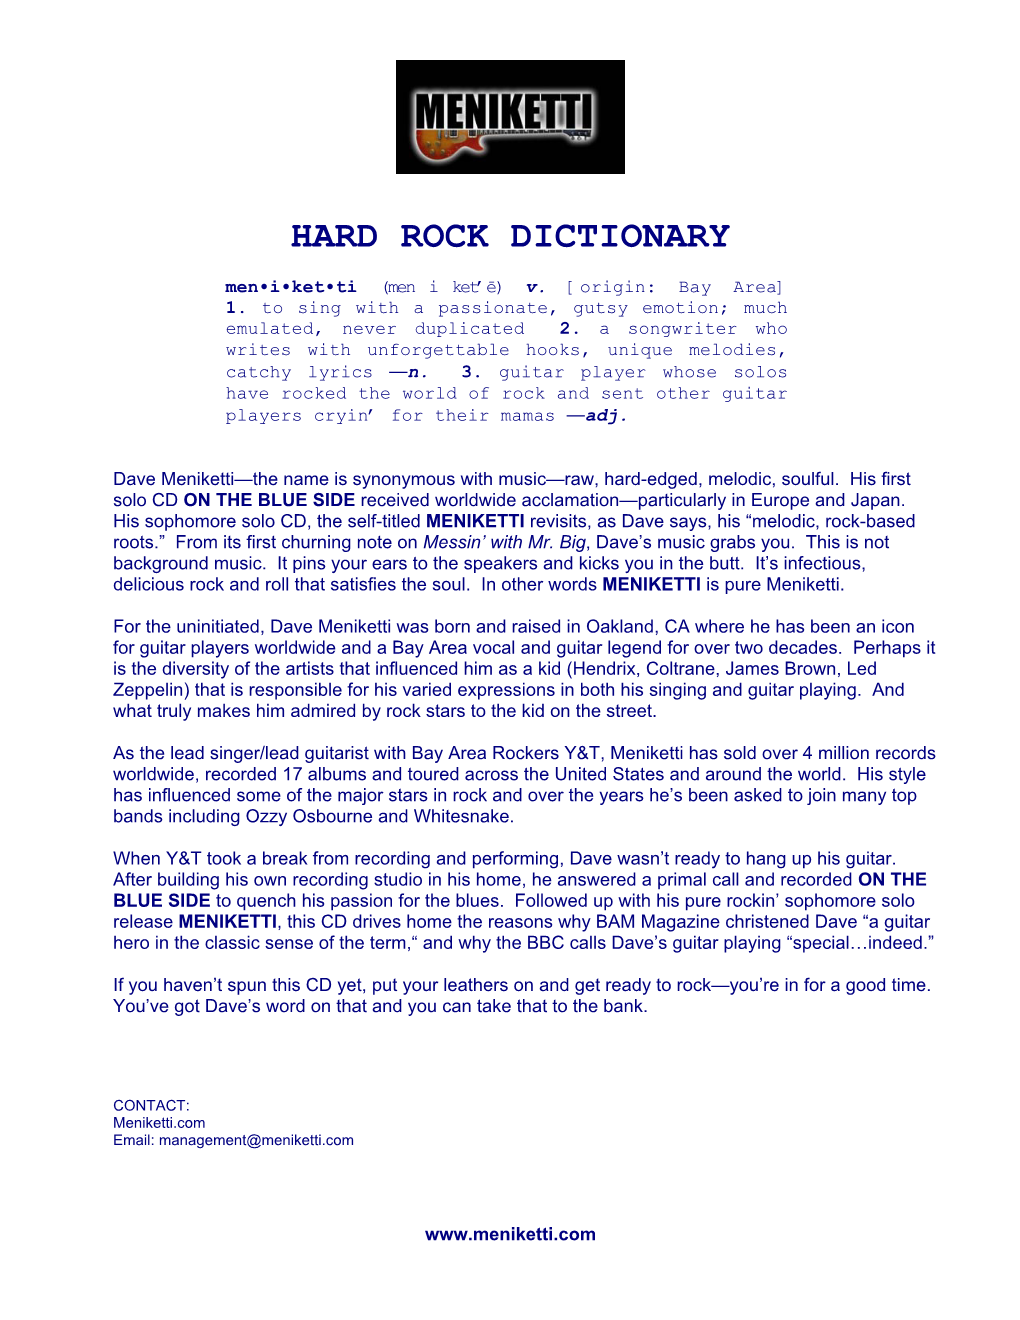 Hard Rock Dictionary